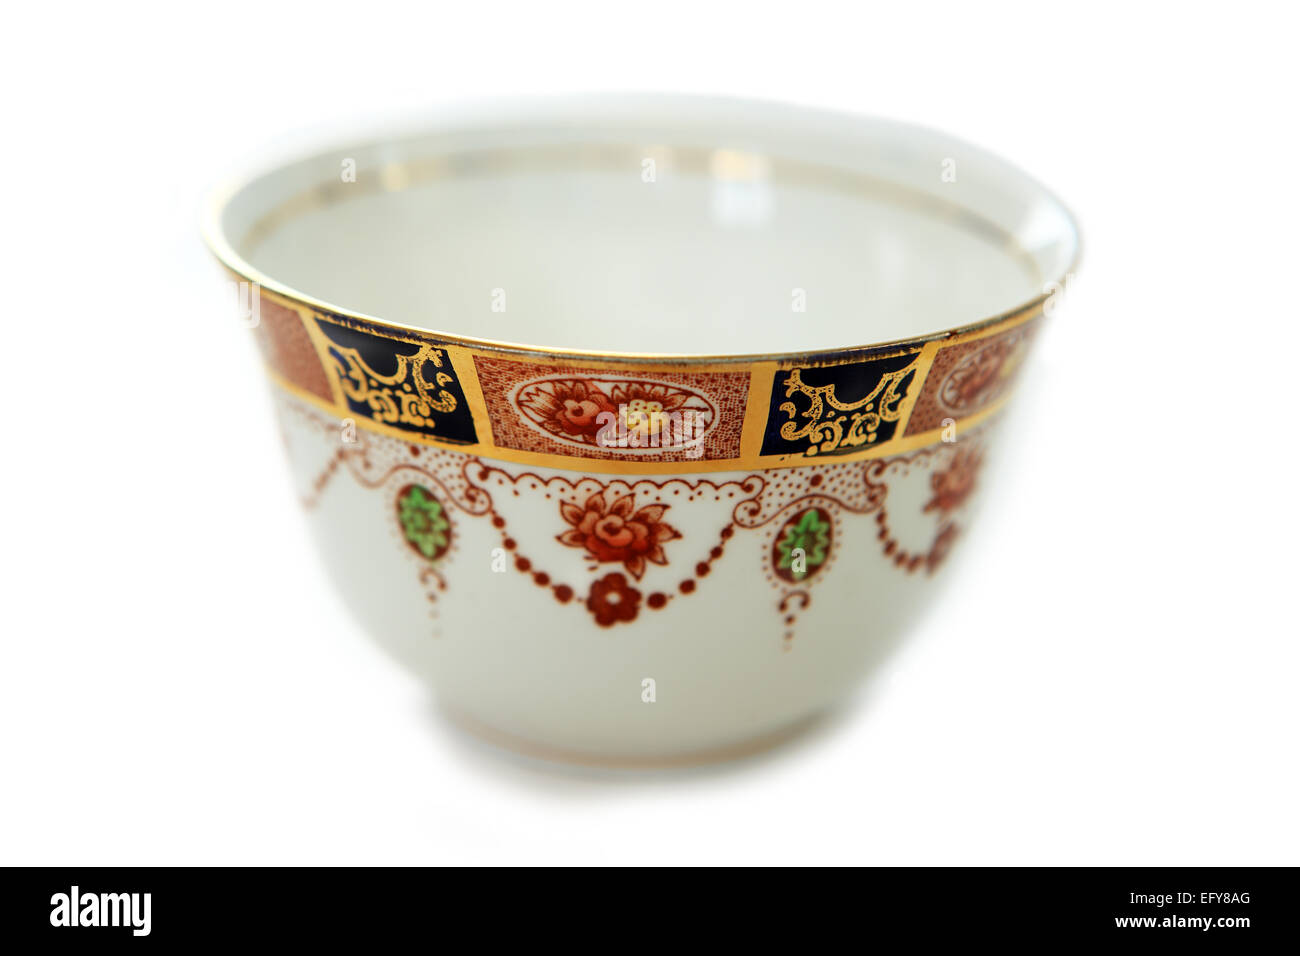 English bone china bowl isolated on a white background Stock Photo